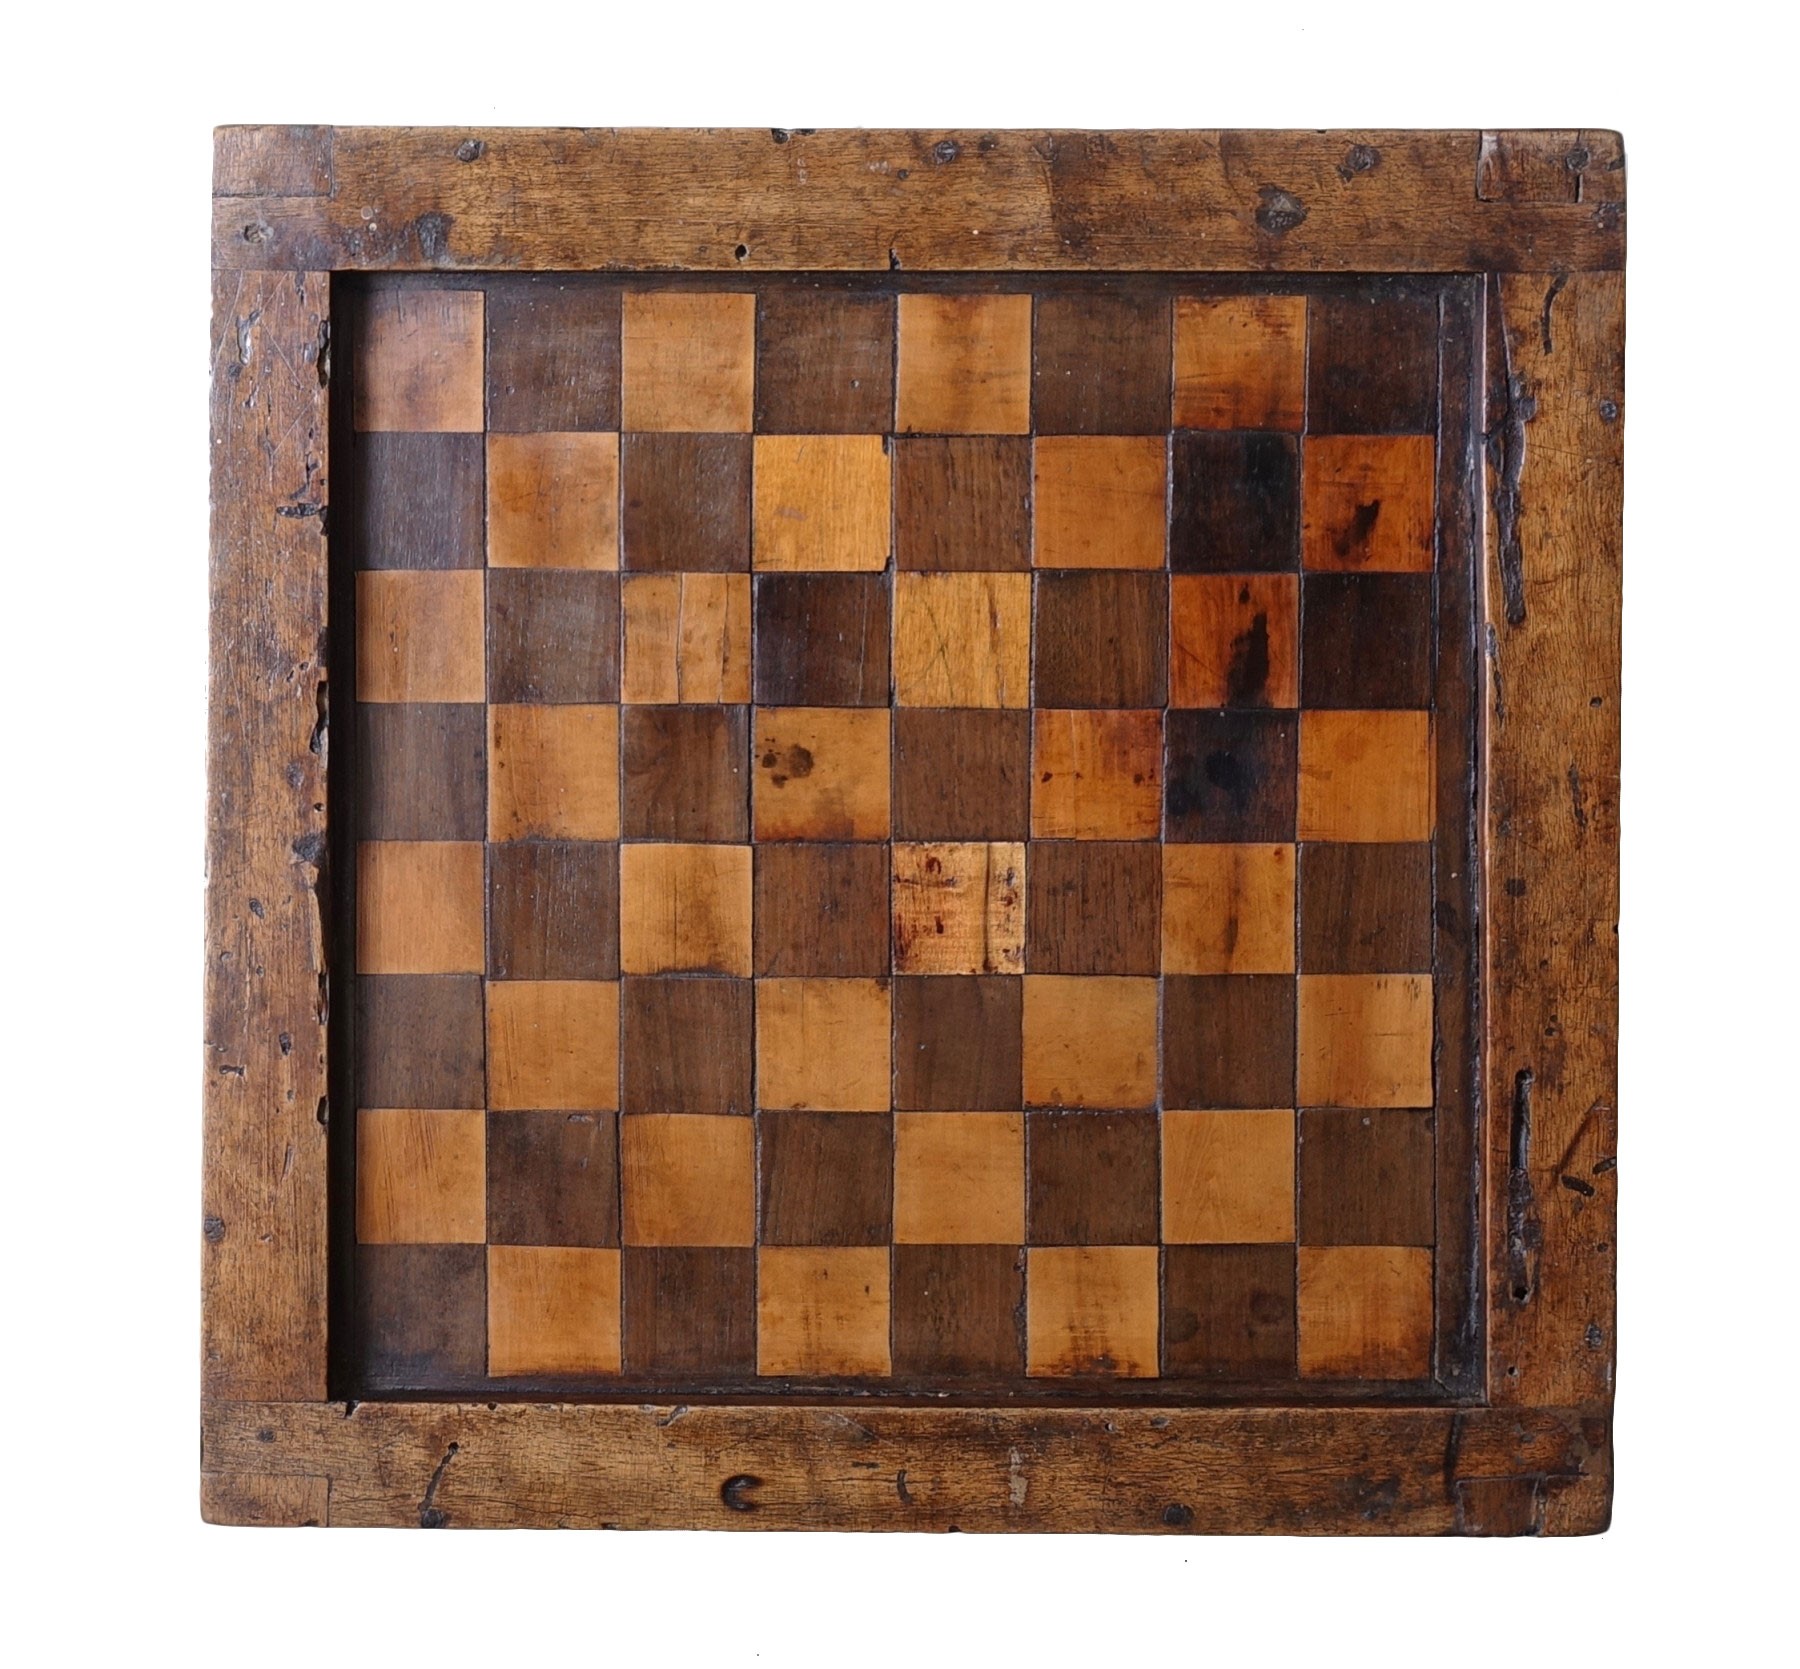 Louis XIV Chess Set